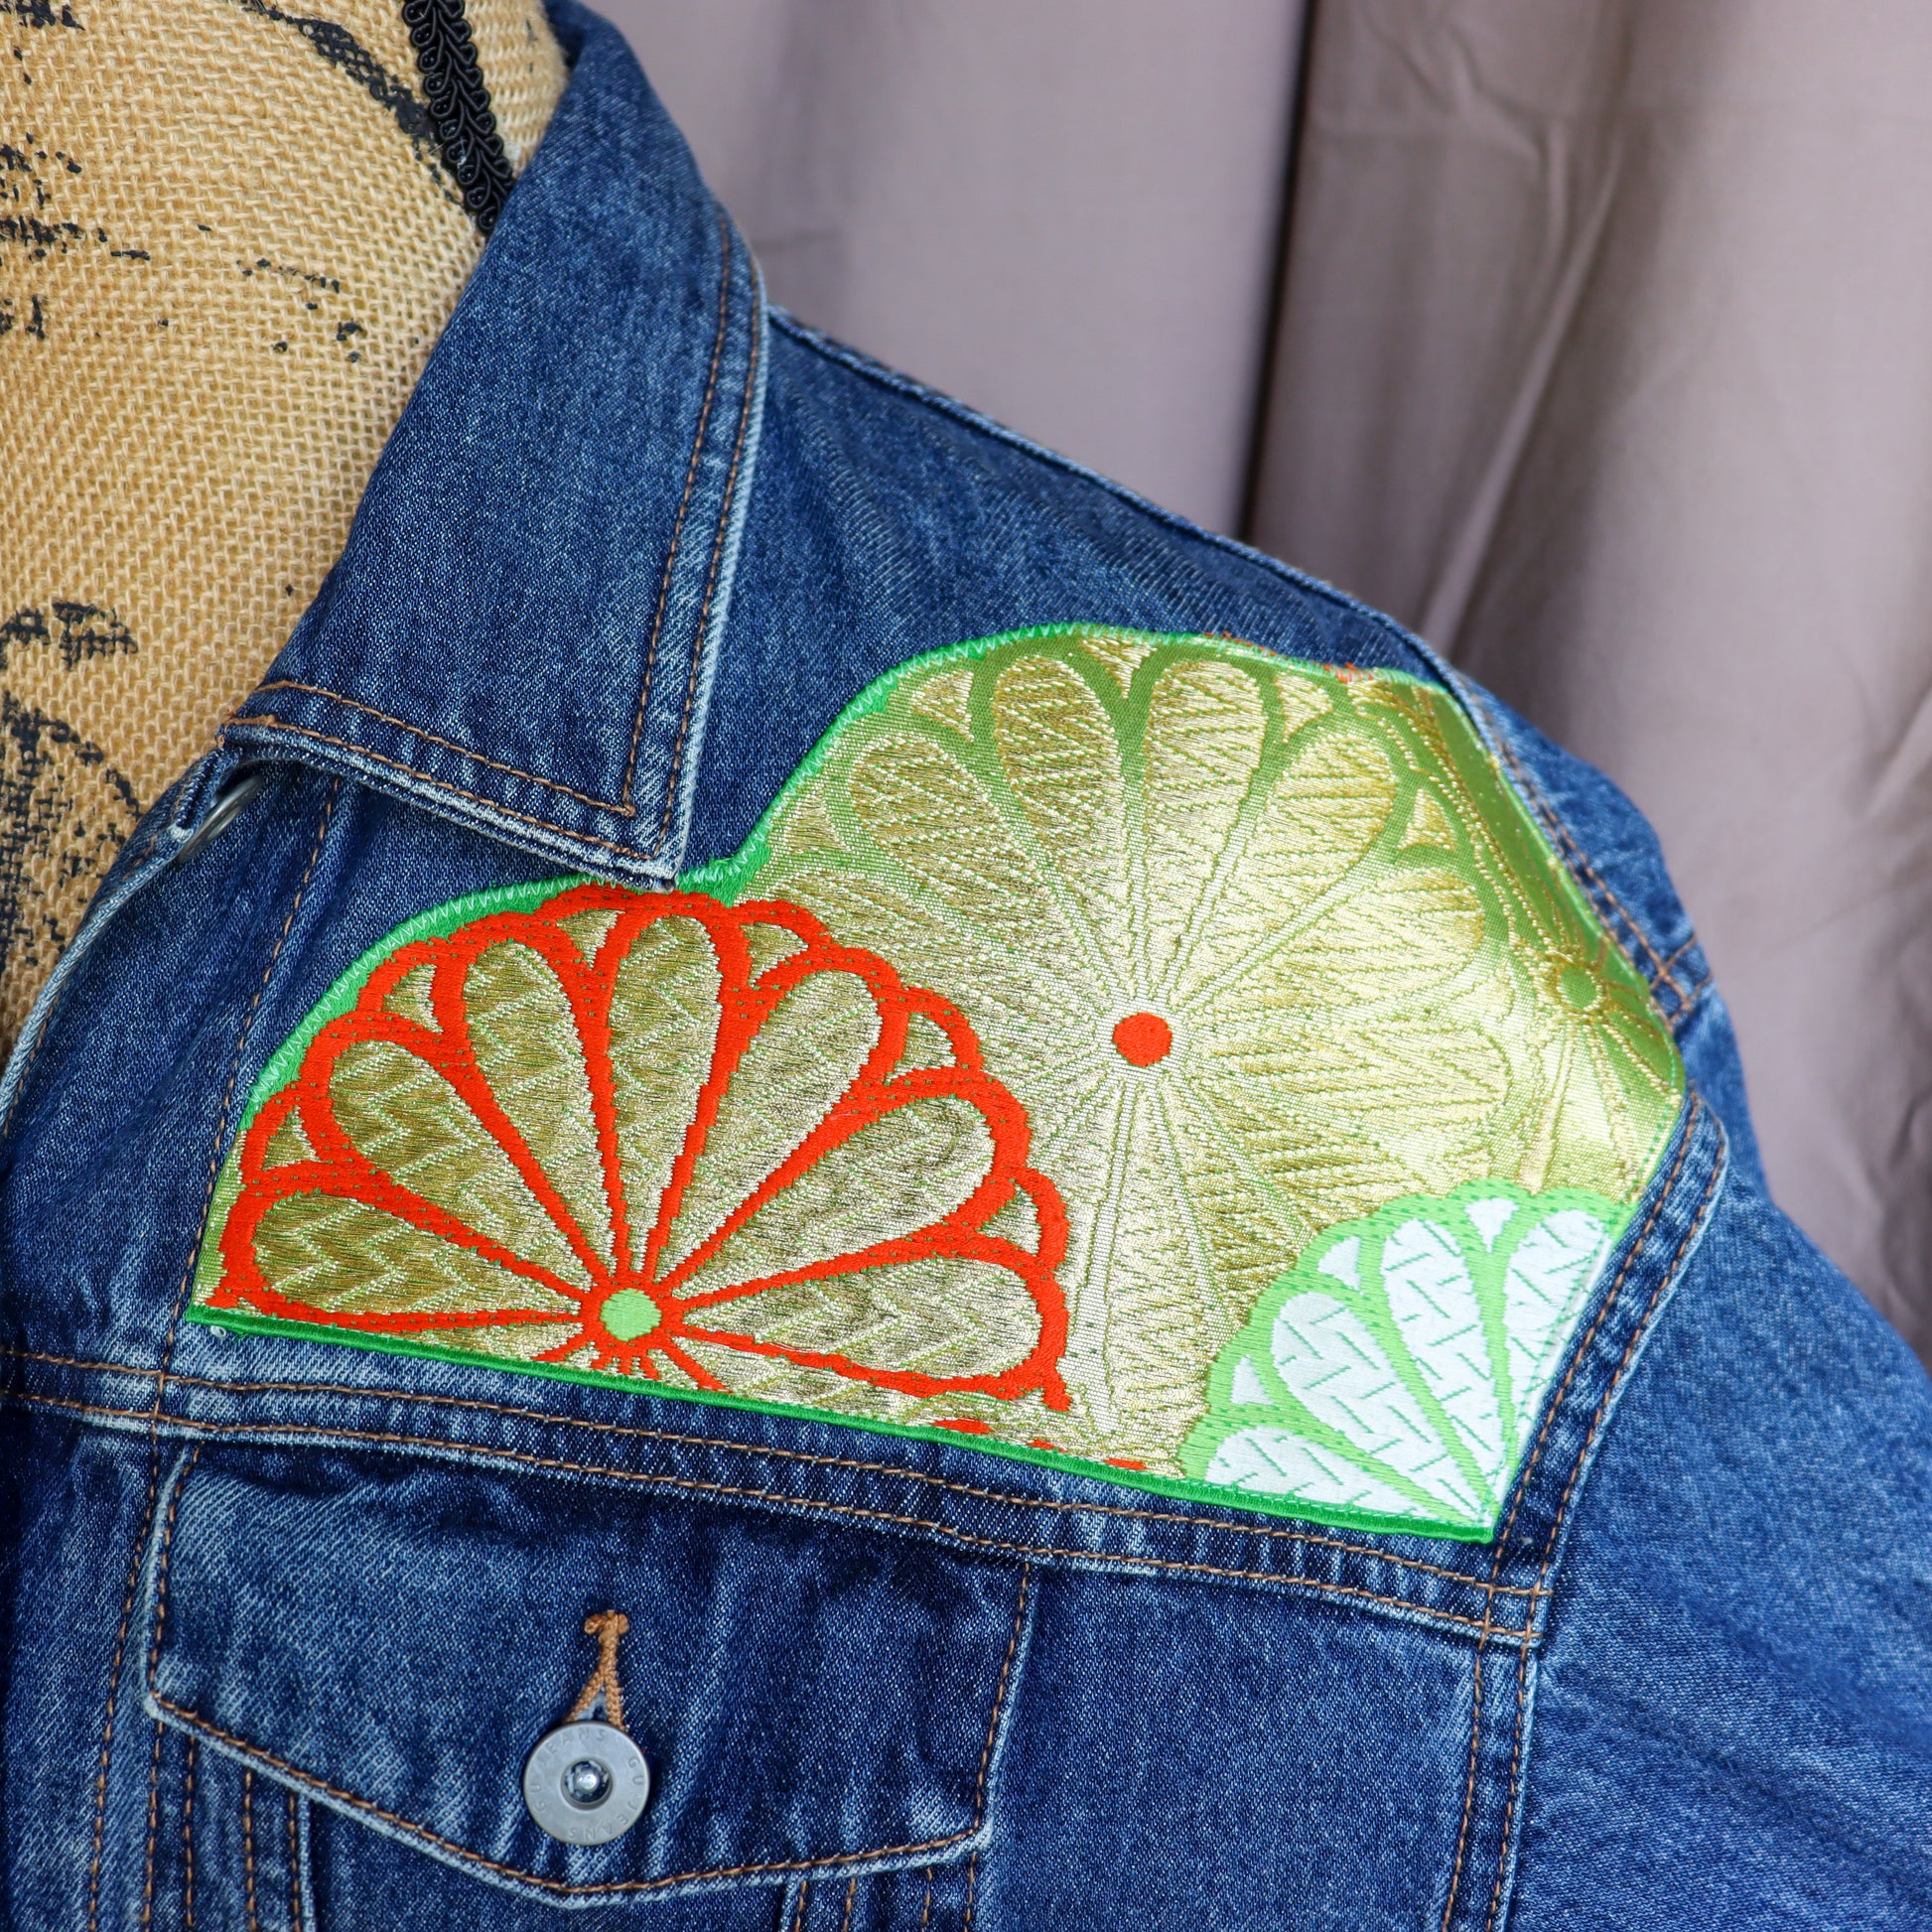 Reworked denim jacket with silk kimono patchworks.